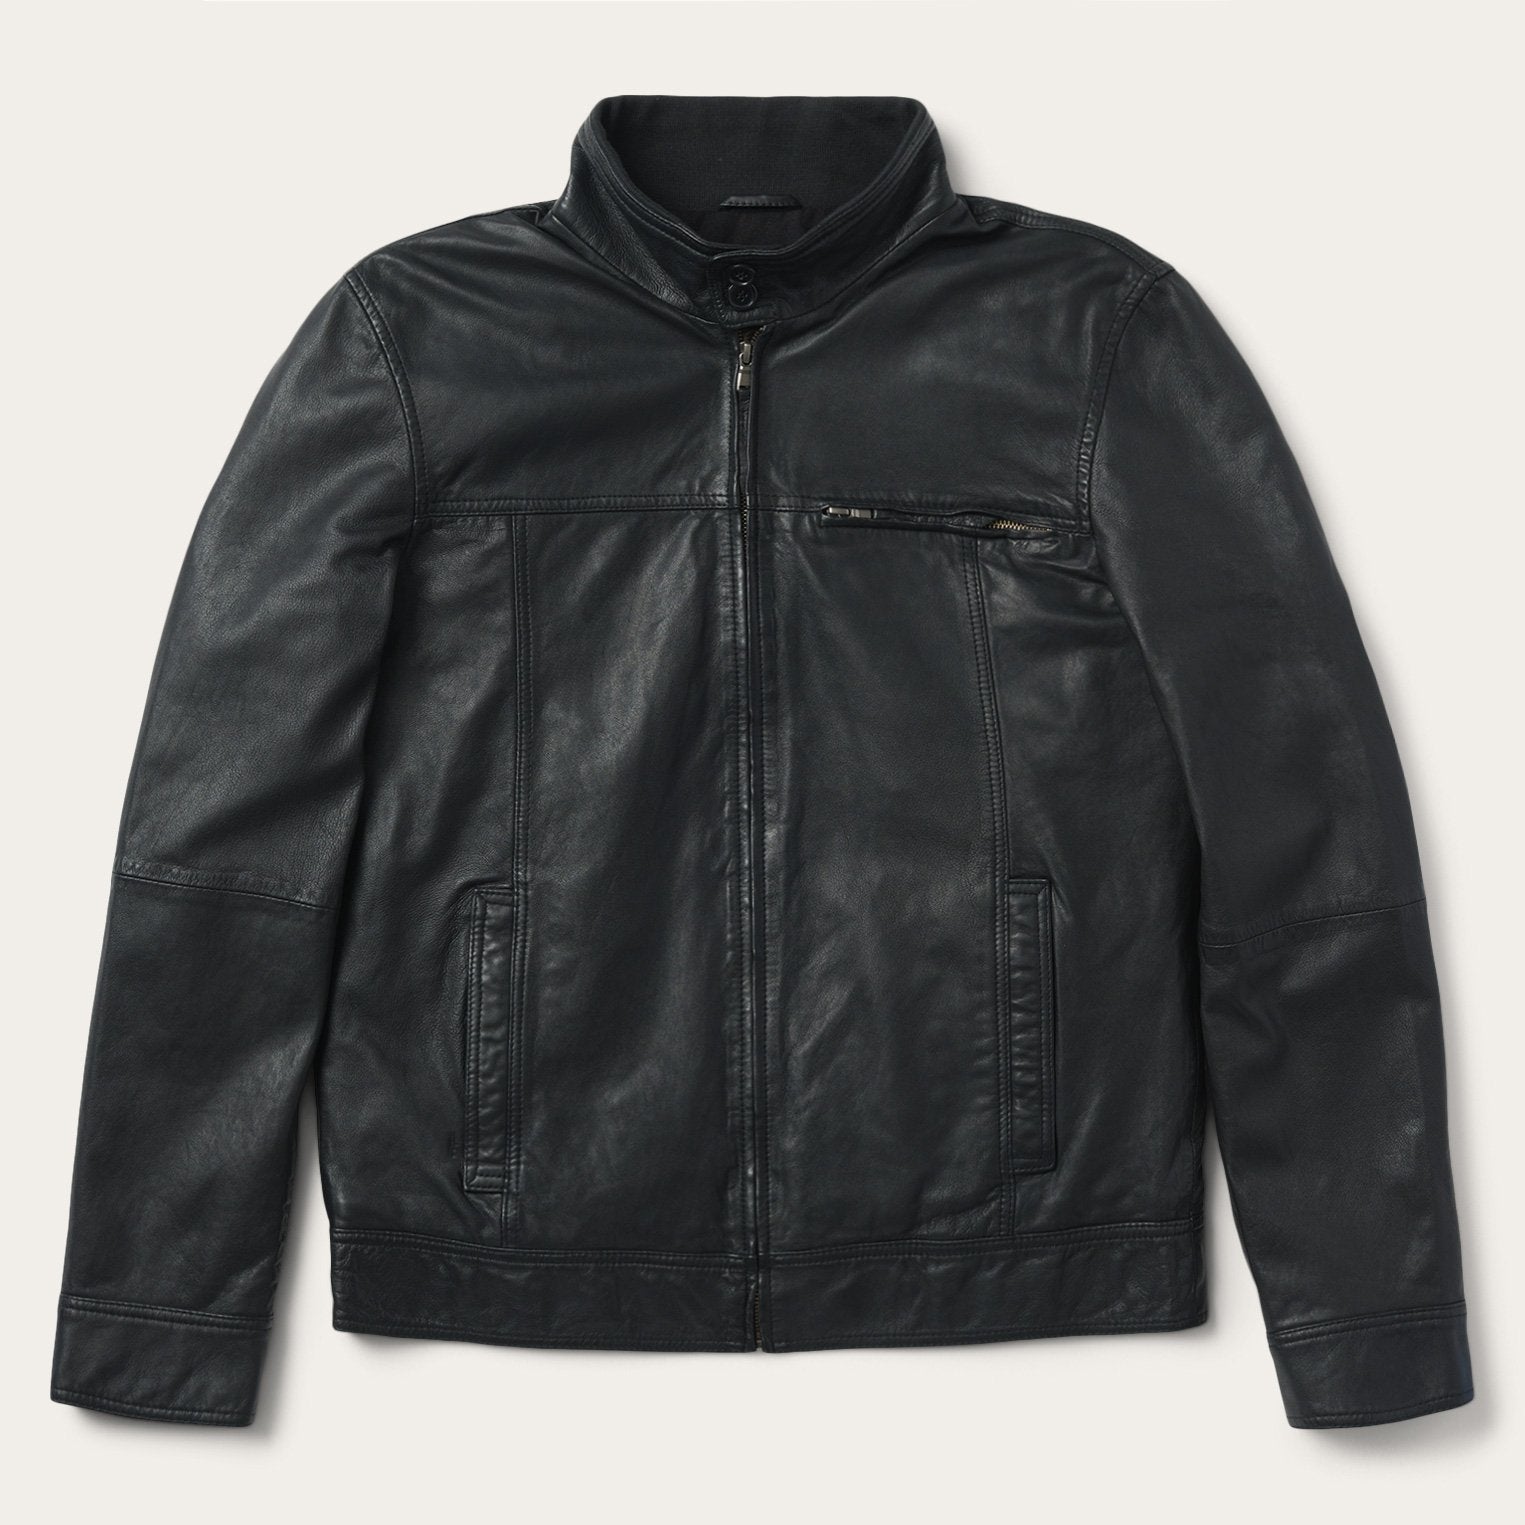 Buy HIGHLANDER Men Black Solid Leather Jacket - Jackets for Men 10721006